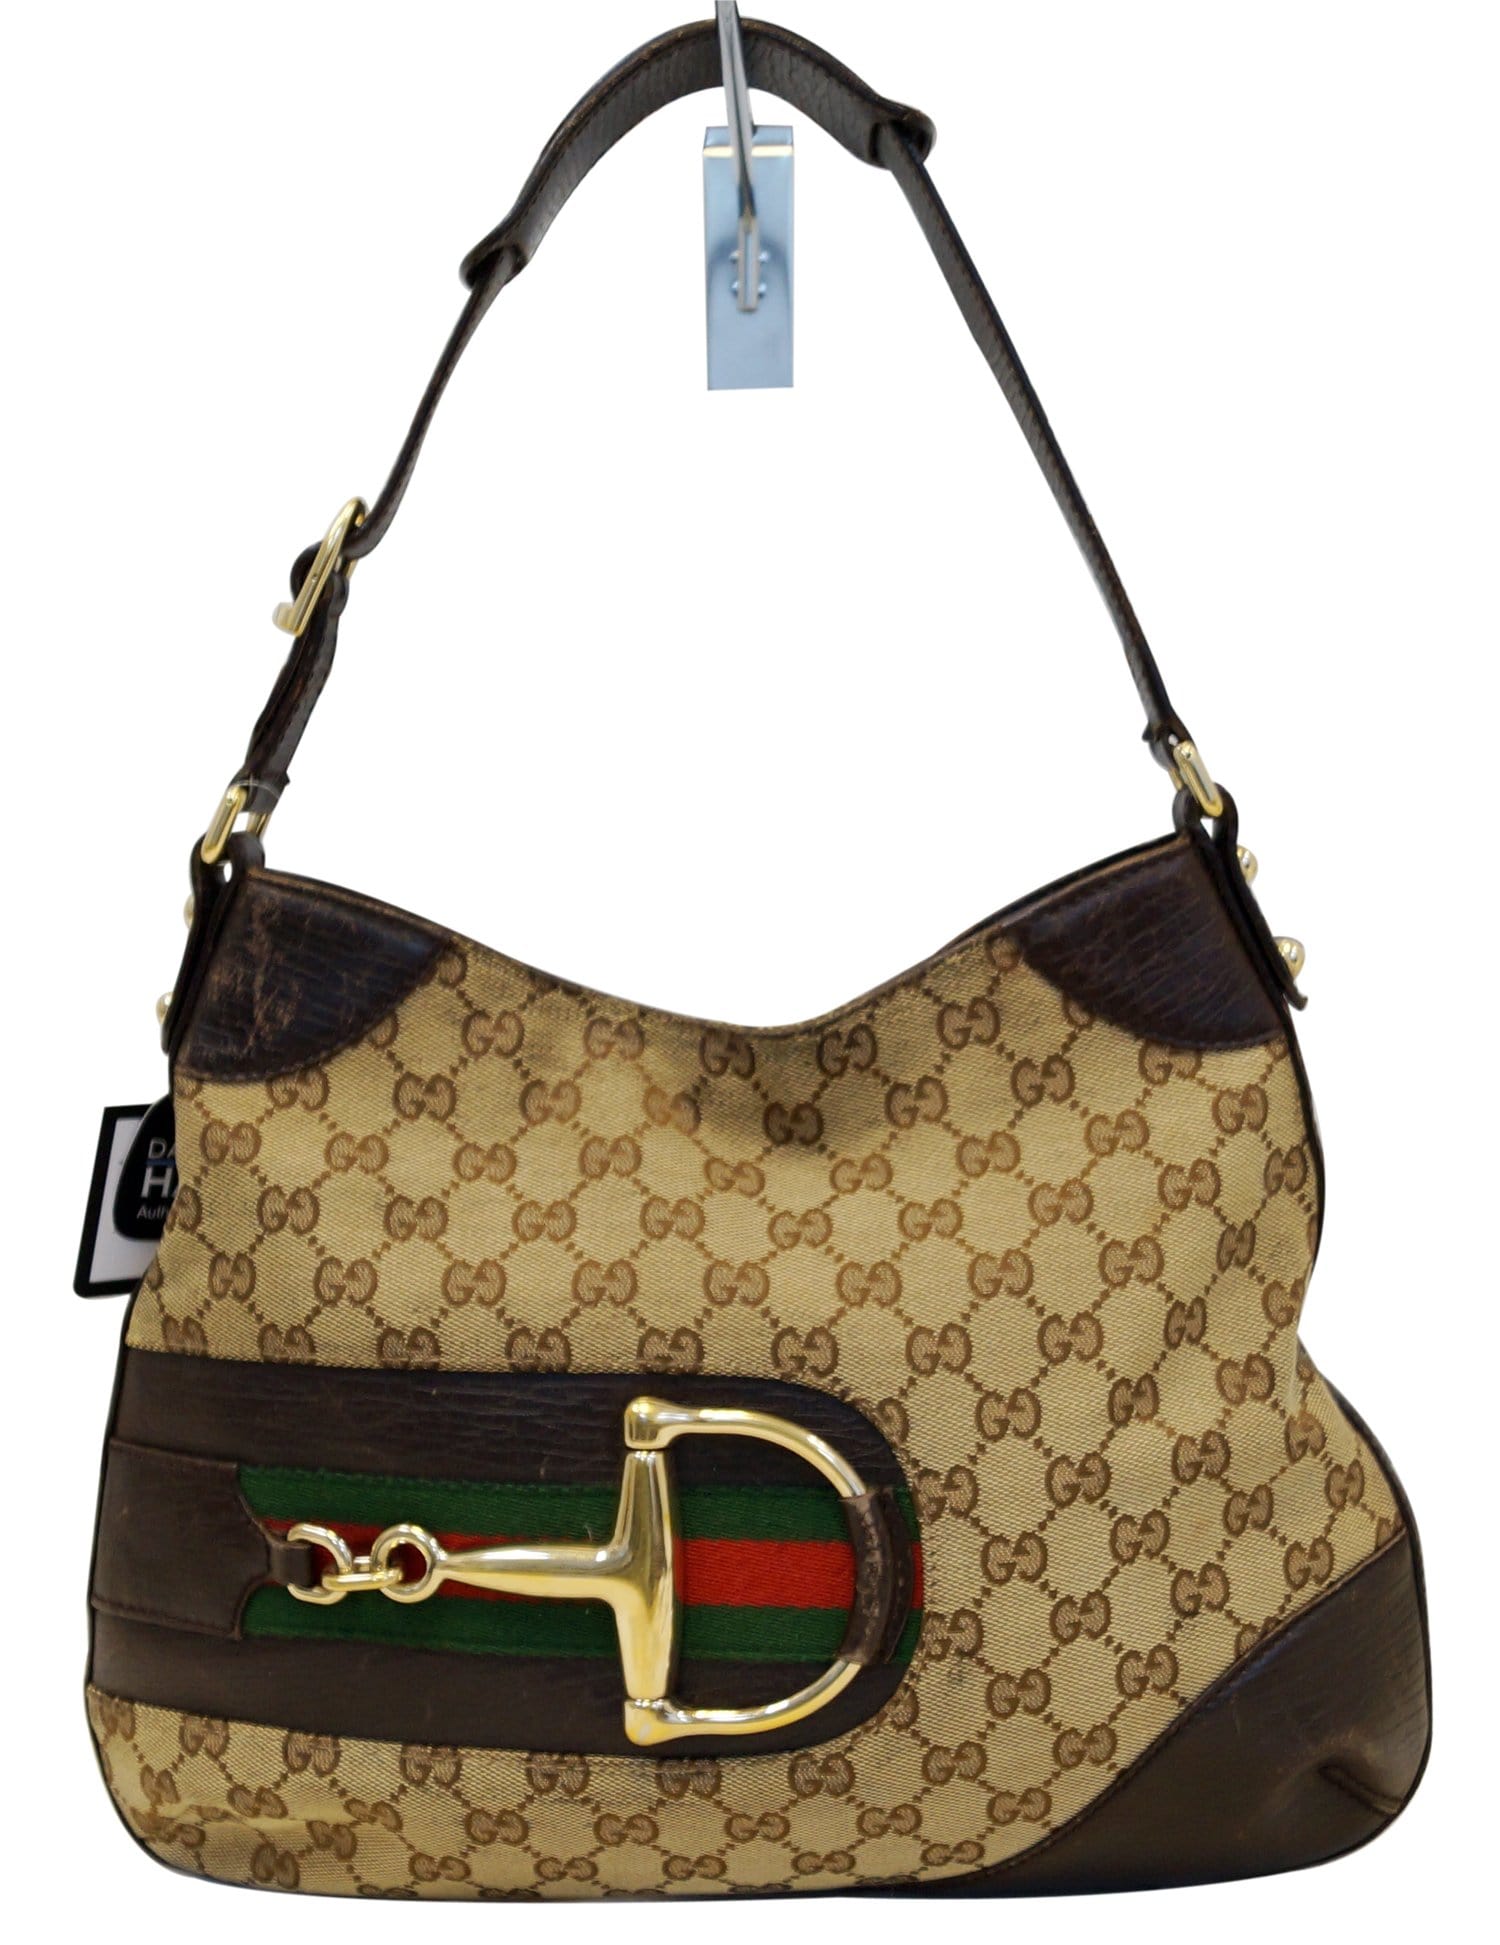 Gucci Beige/Ebony GG Canvas Horsebit Large Hobo Bag Gucci